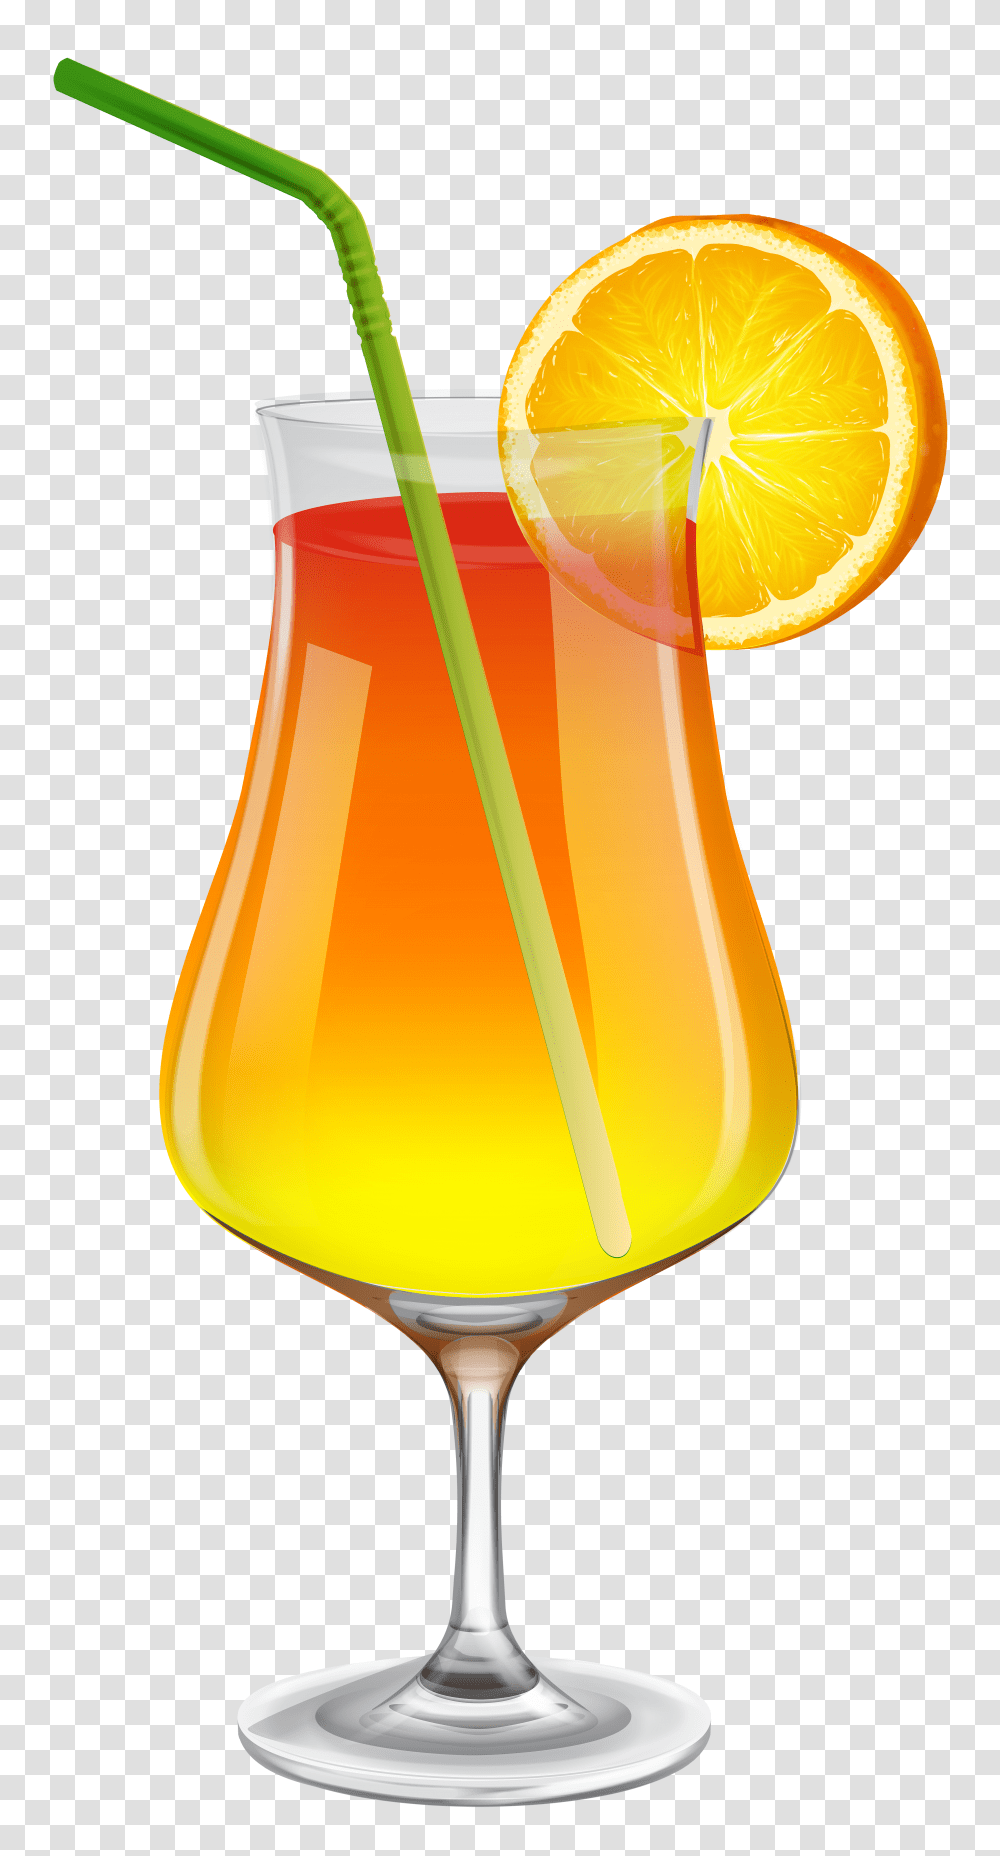 Best Drink Images In 2020 Summer Cocktail, Juice, Beverage, Orange Juice, Lamp Transparent Png